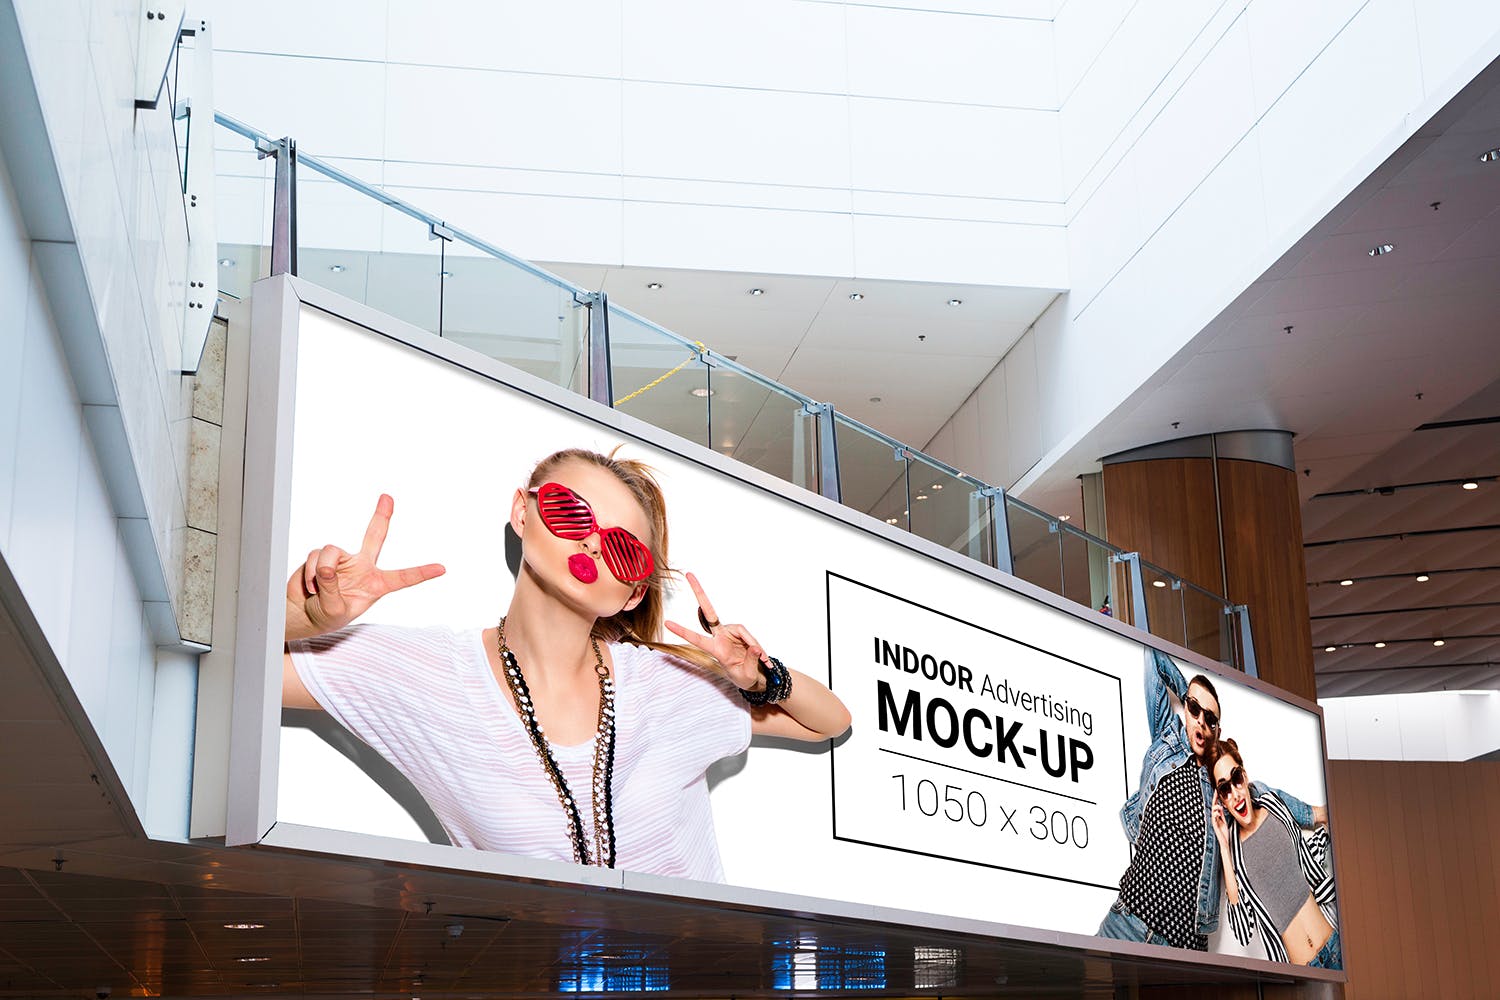 室内广告牌图片效果图样机模板 Indoor Advertising Mock-Up插图(7)